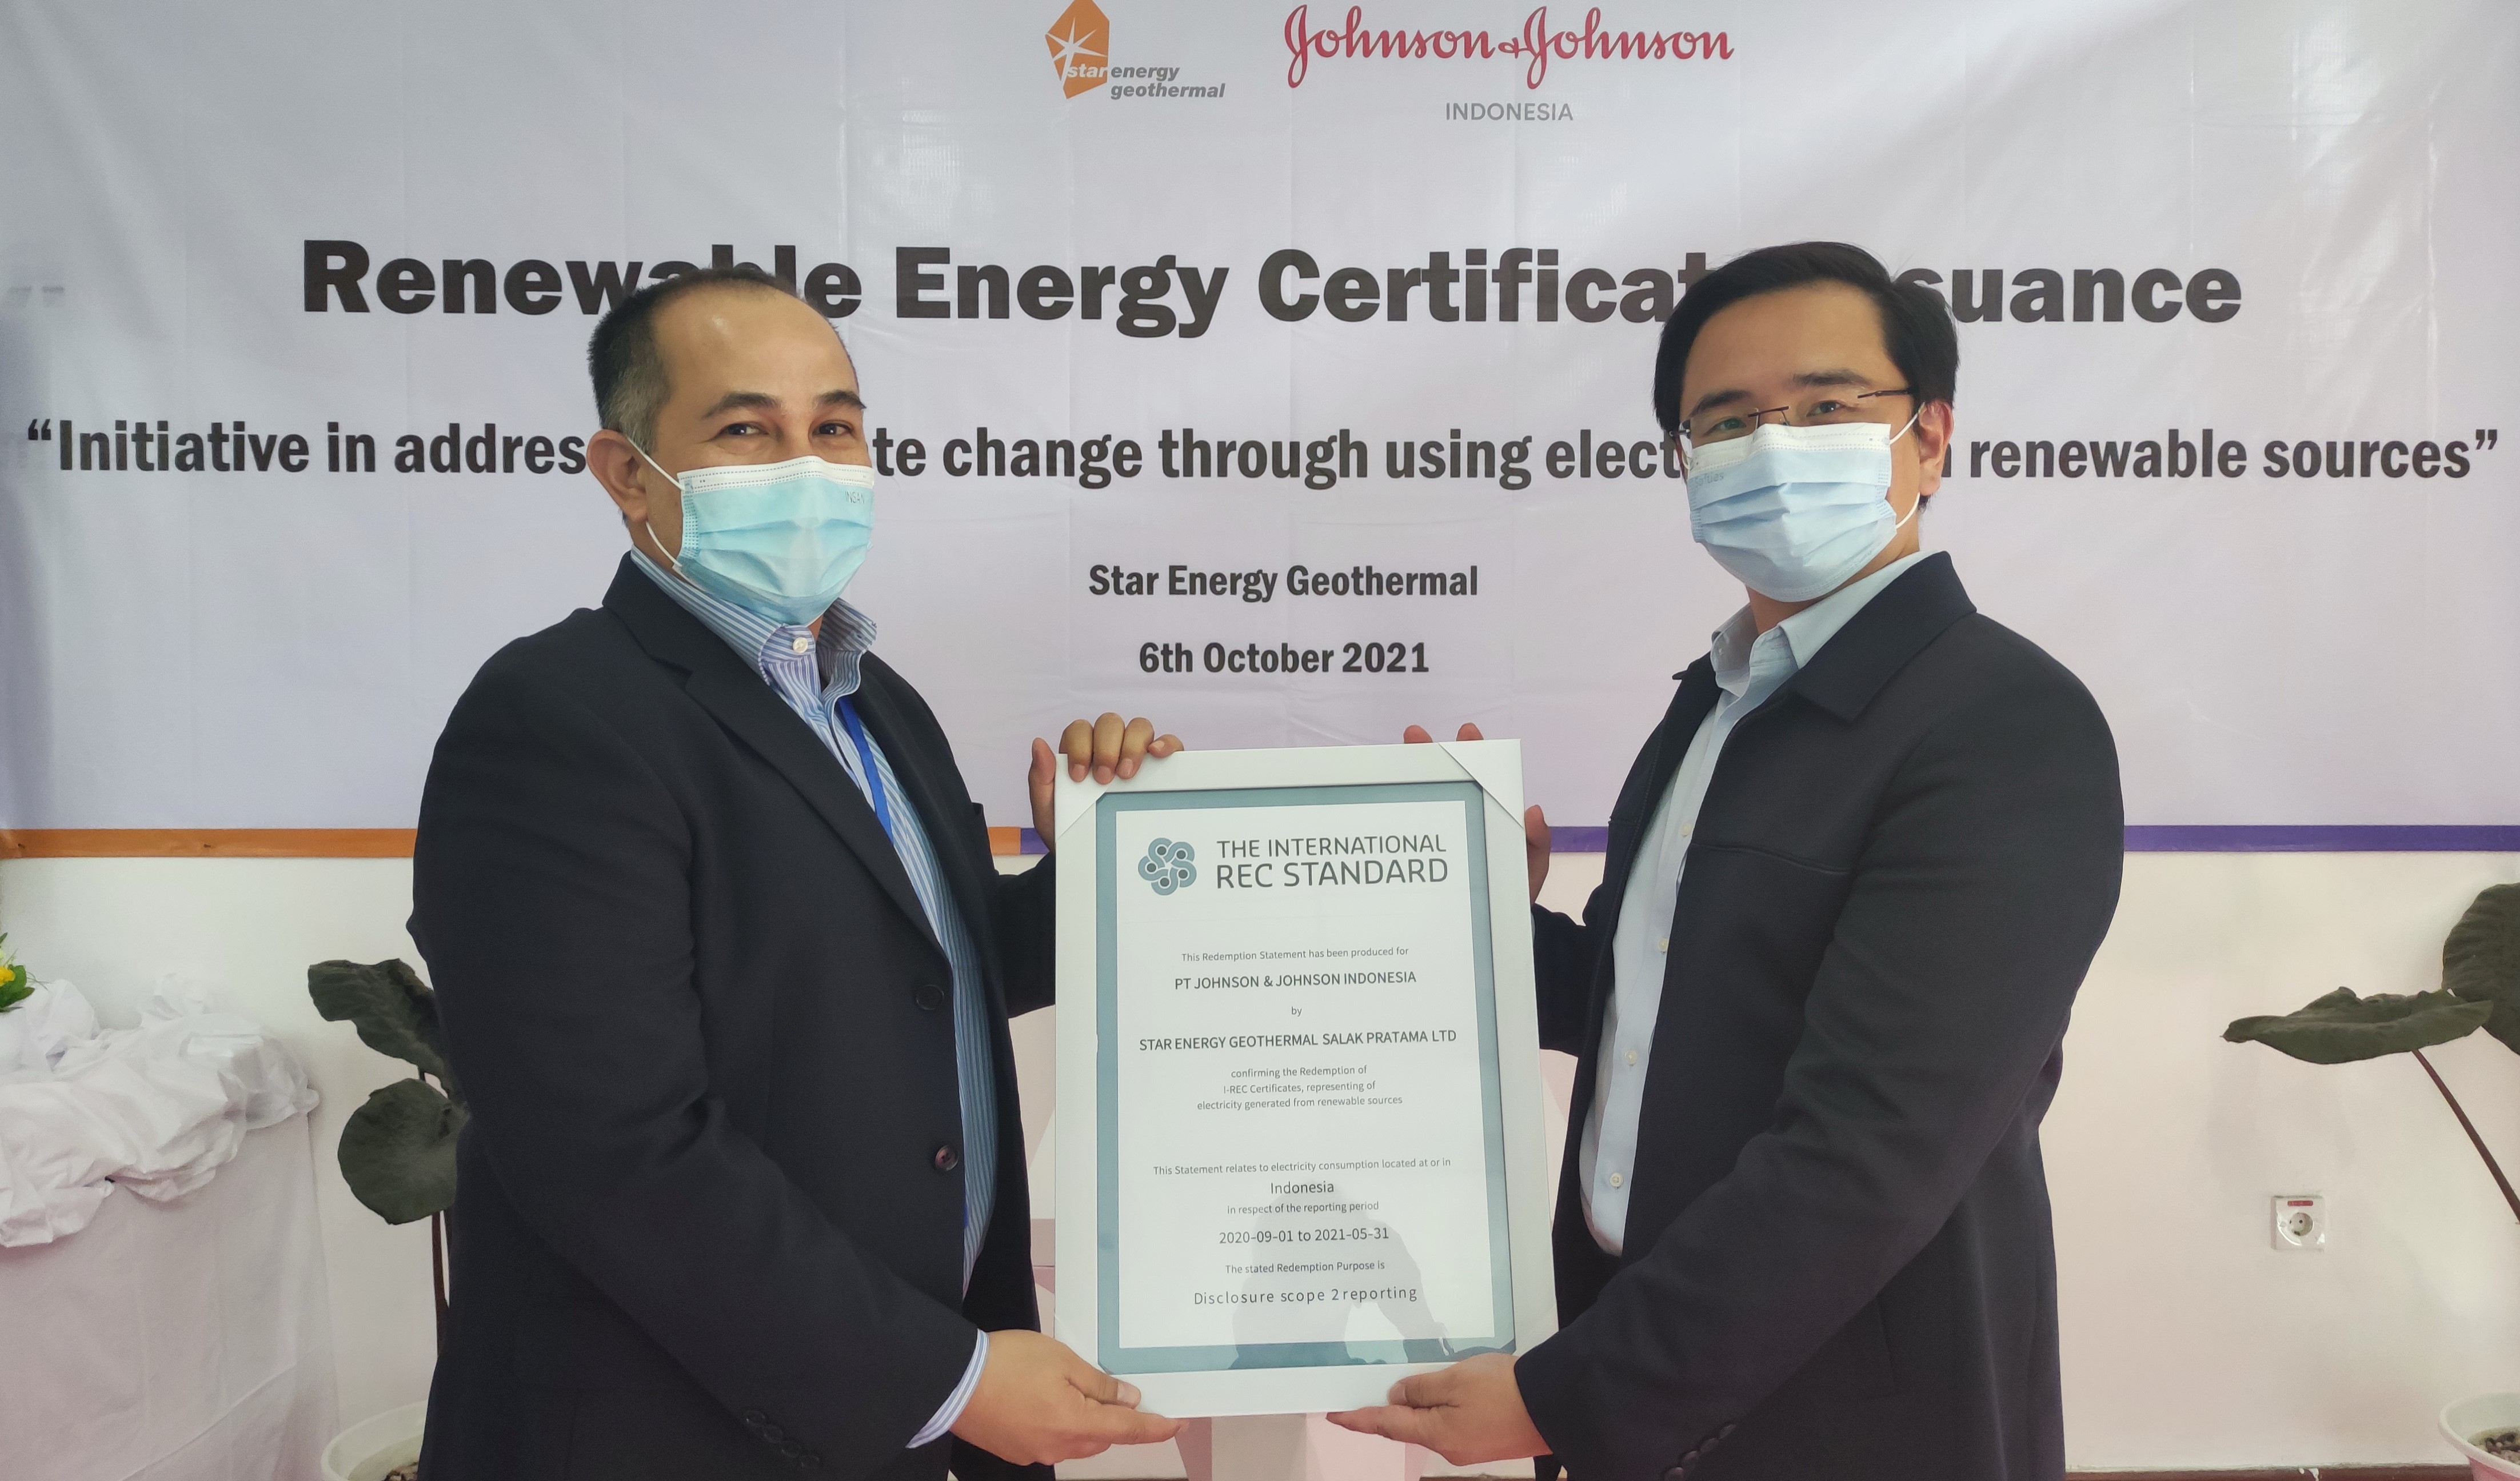 Johnson & Johnson Gandeng Star Energy Geothermal Hasilkan Listrik Terbarukan